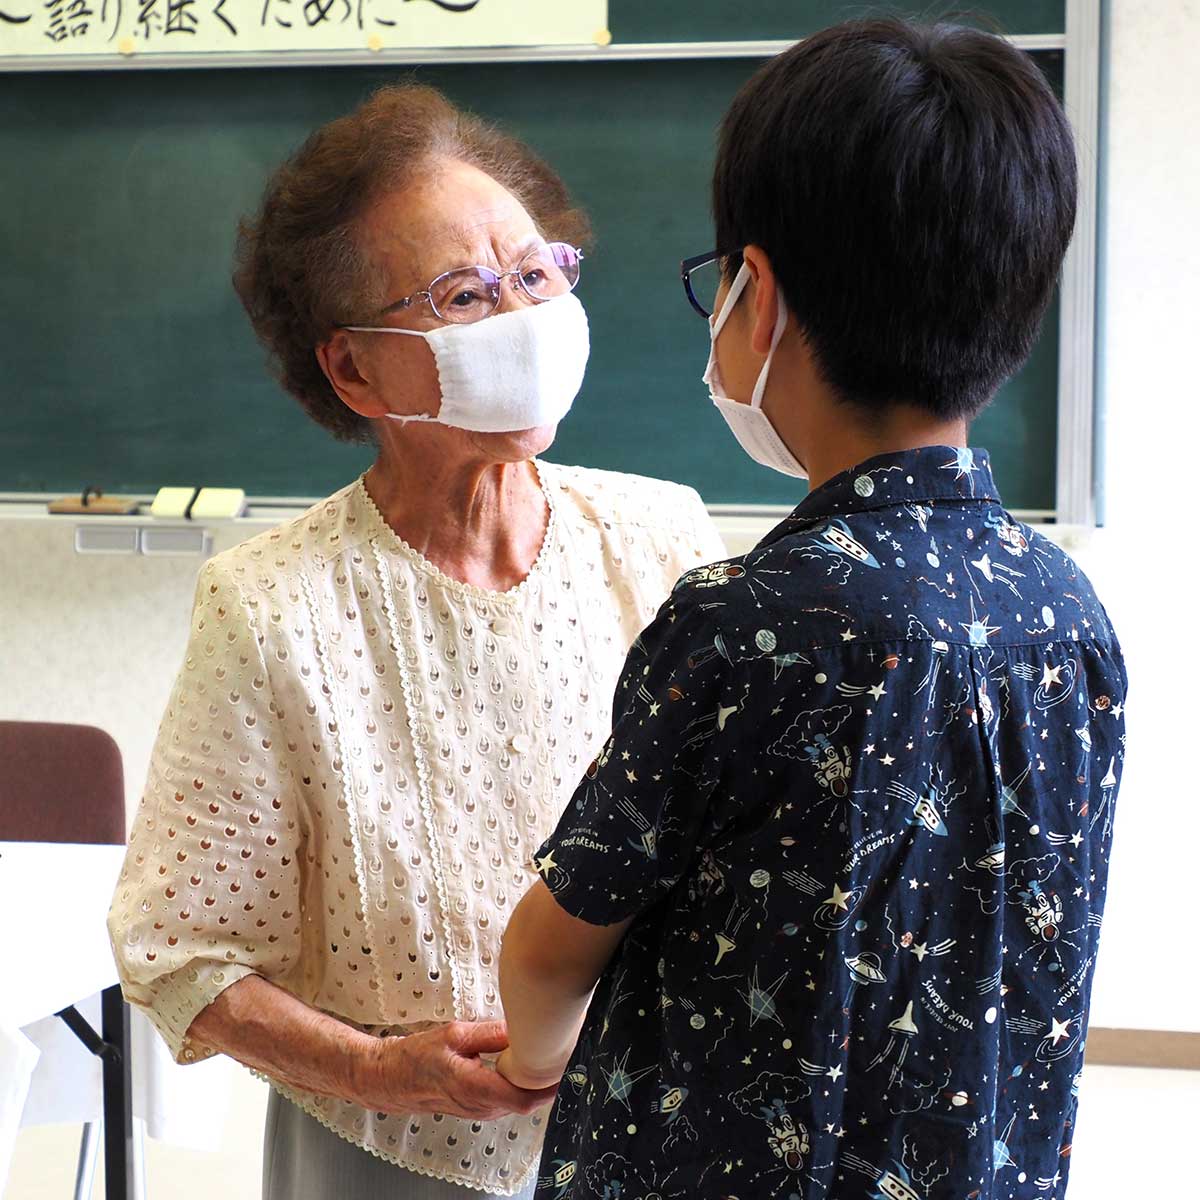 小学生の手を握って「平和を守って」と語りかける94歳の佐々木郁子さん